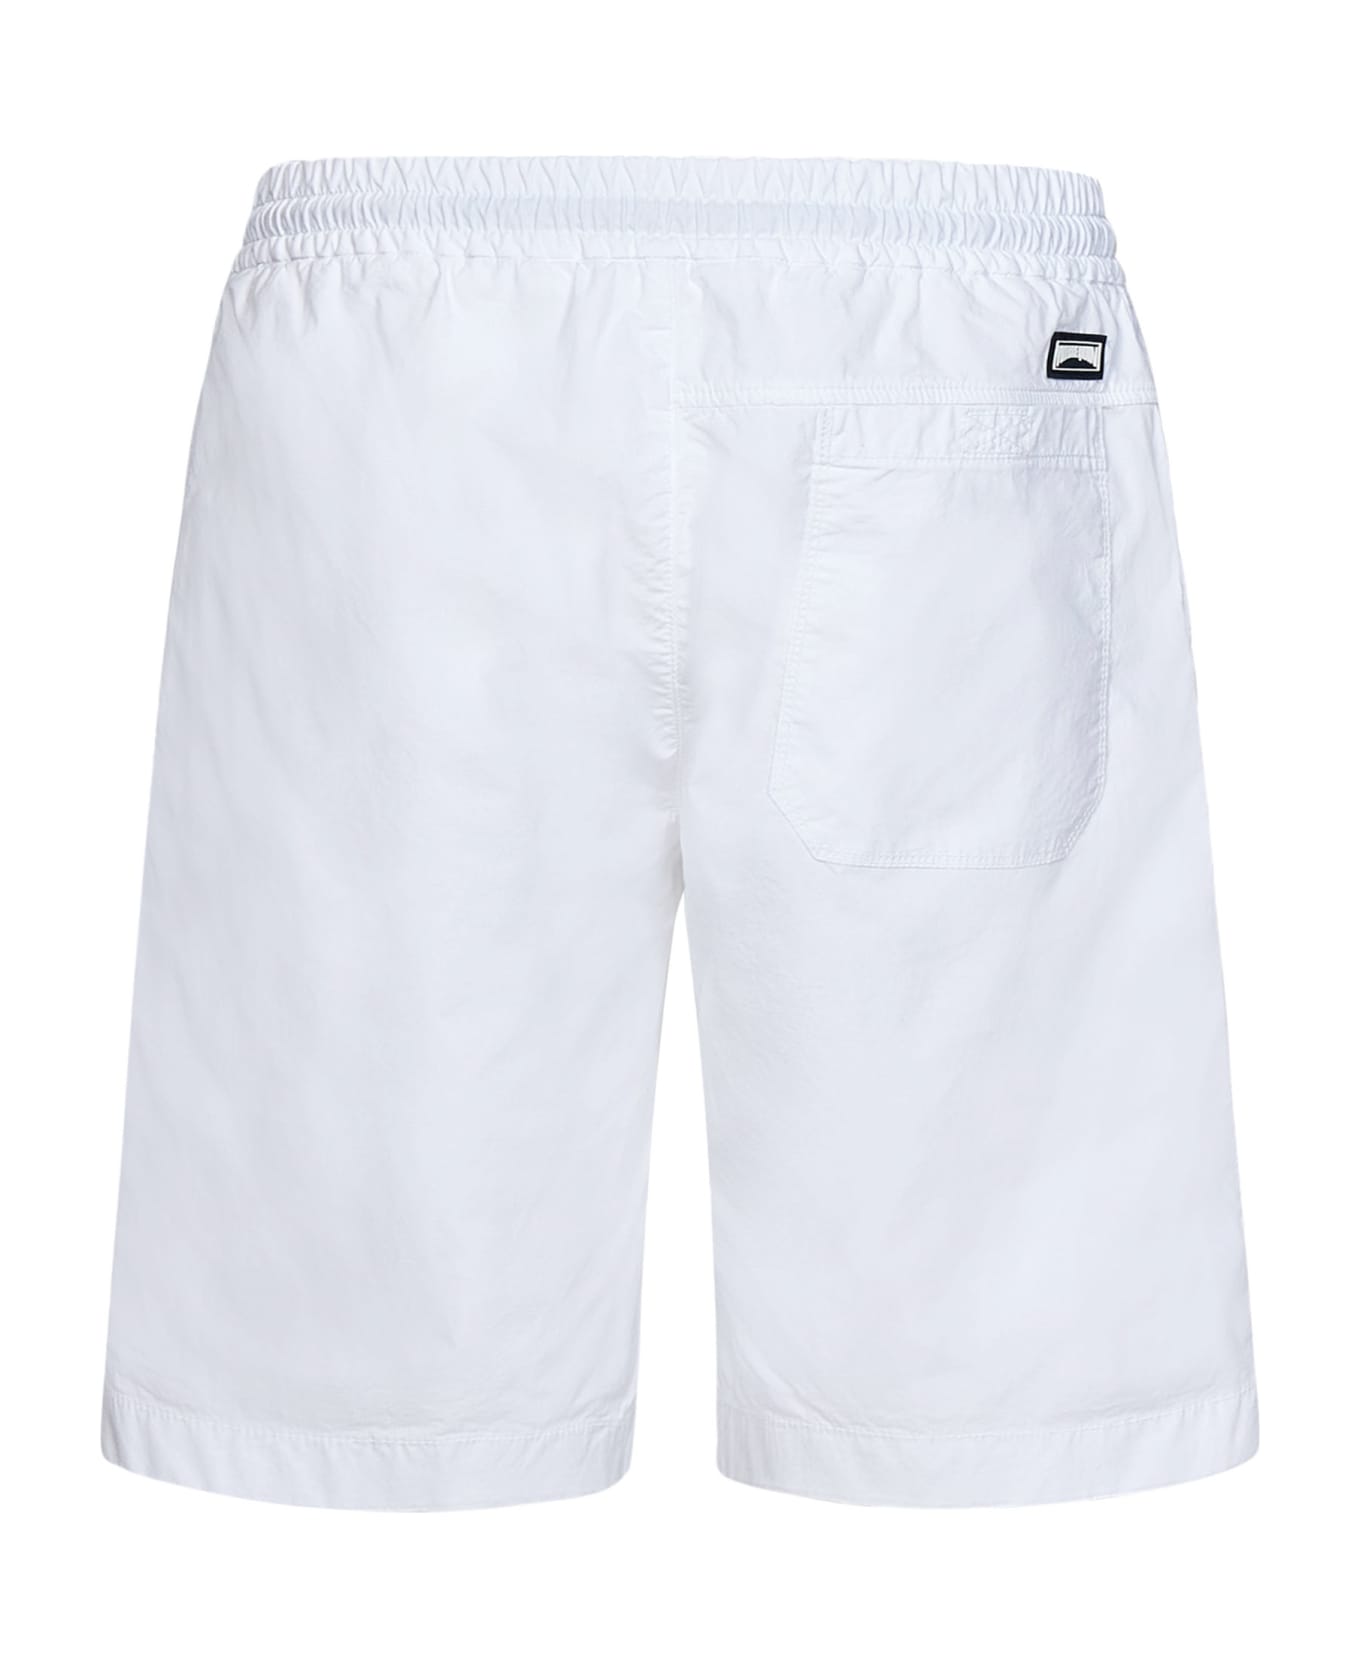 Vilebrequin Shorts - White